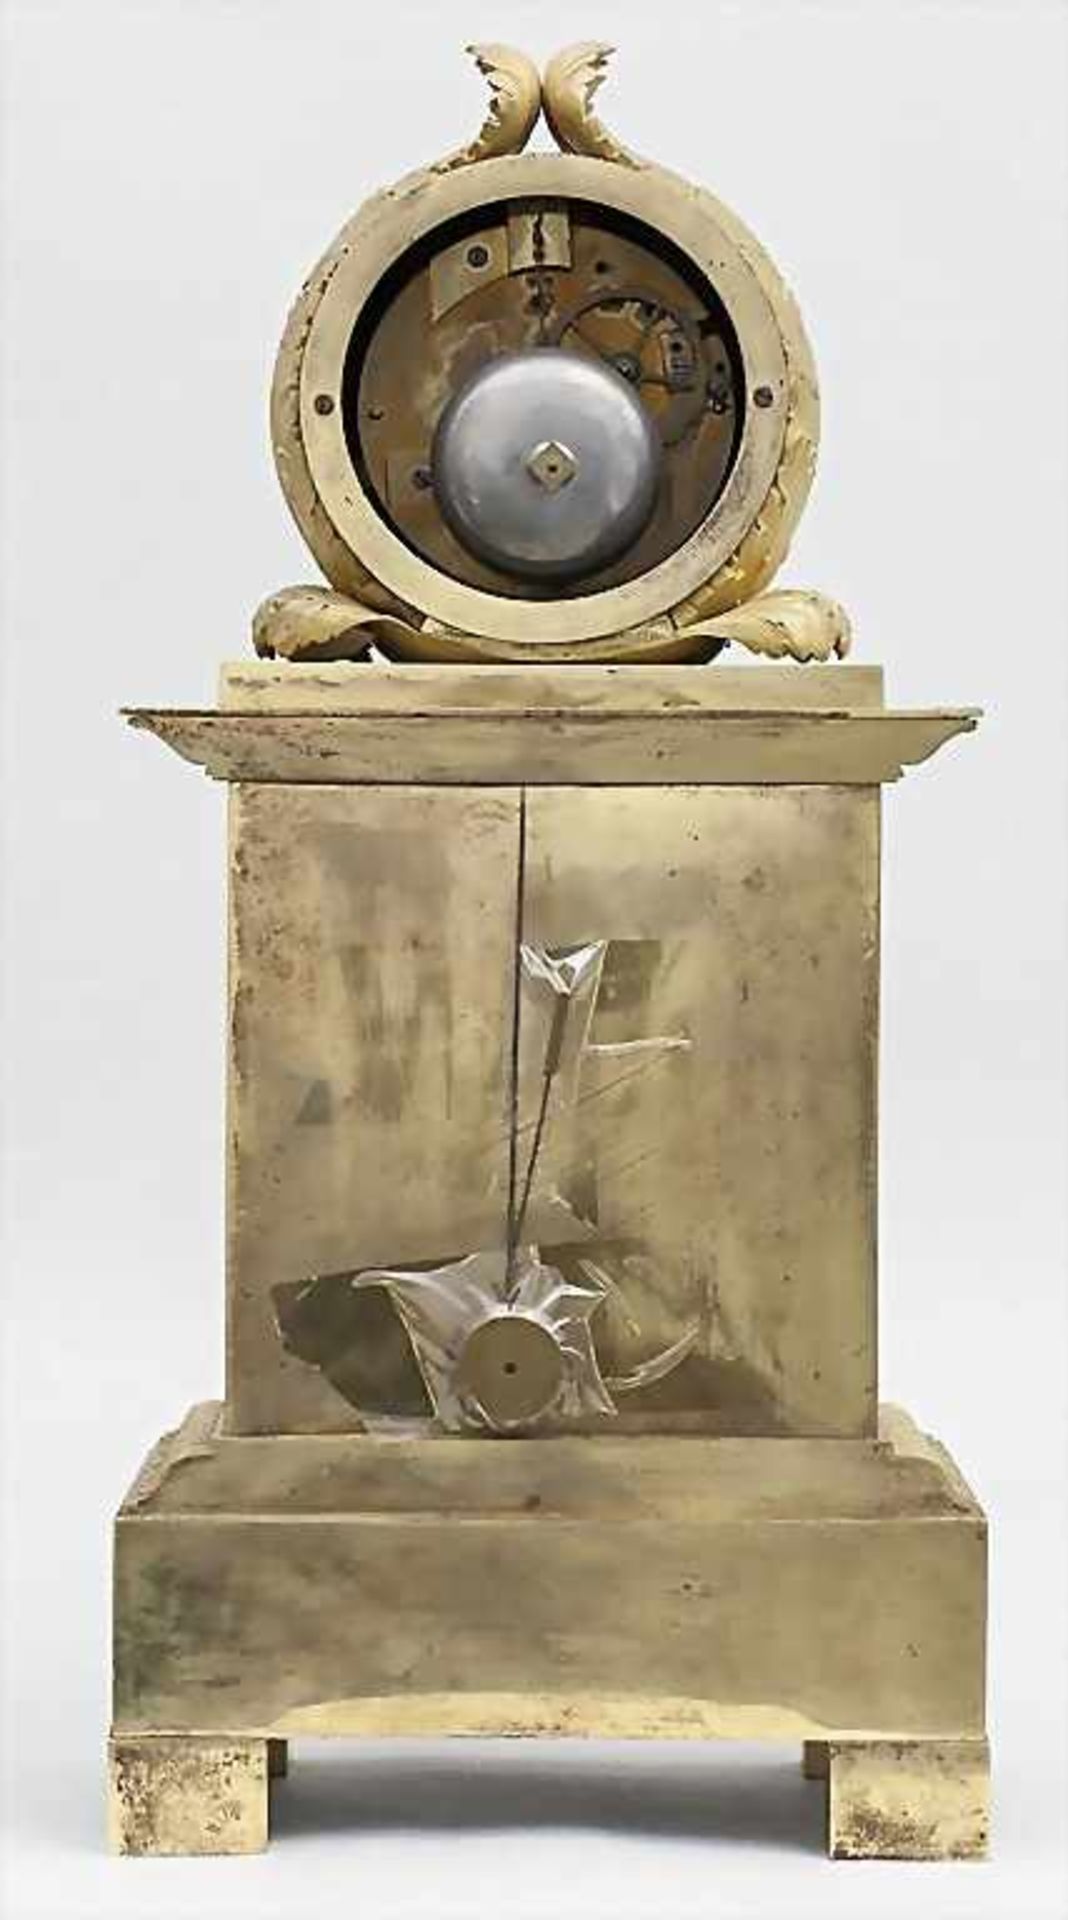 Pendule/Empire Clock, Martina Horloge de Roi a Turin, um 1810 - Image 4 of 5